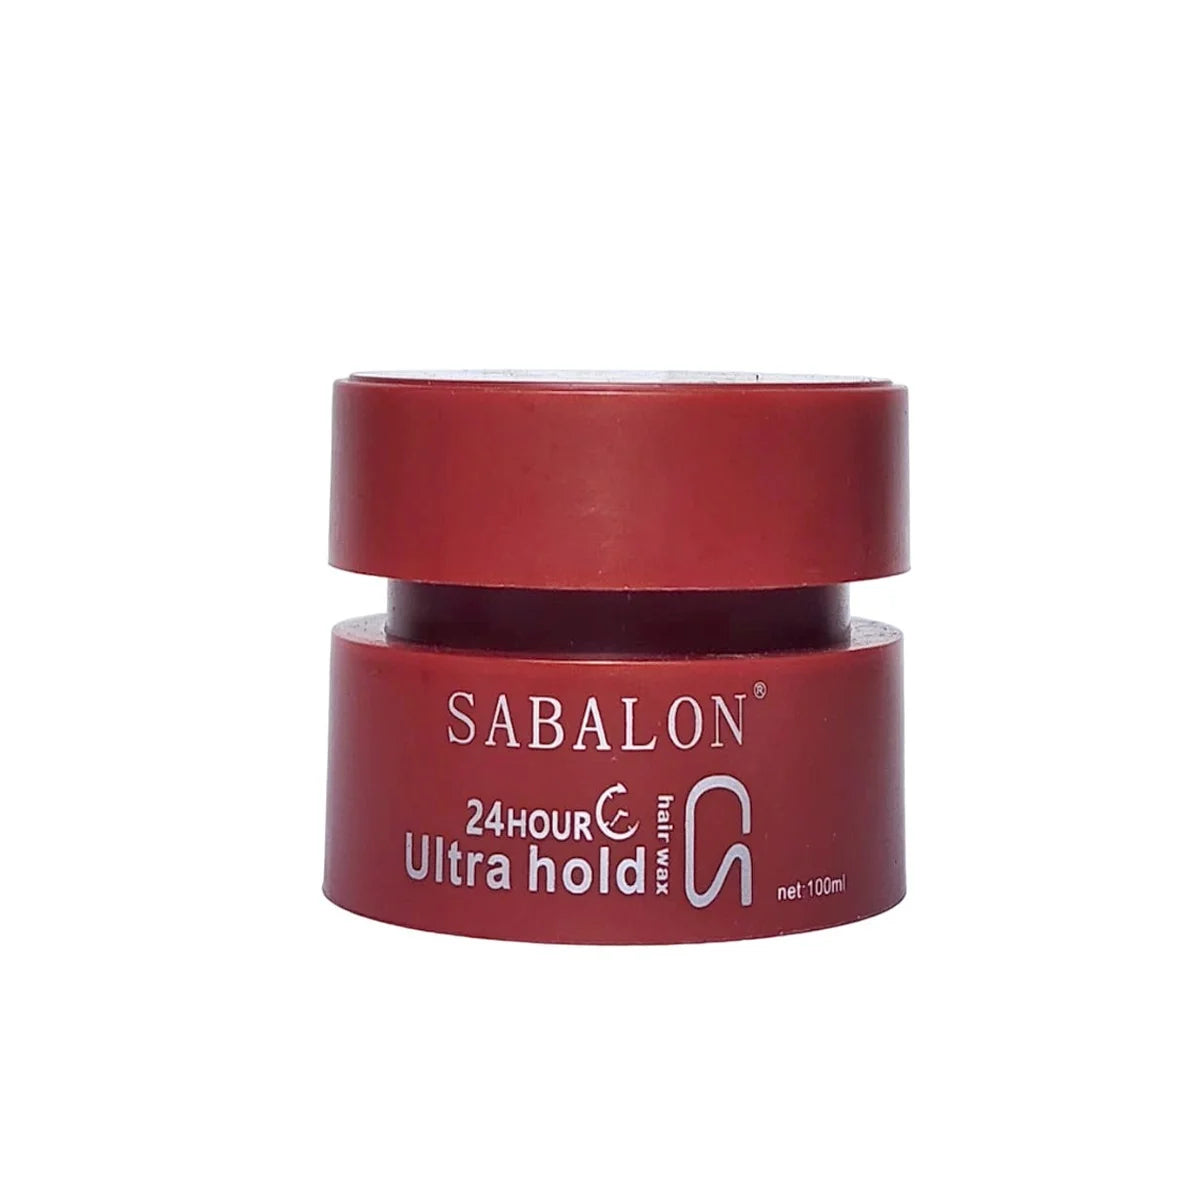 Sabalon 24 Hour Ultra Hold Hair Wax 100ml